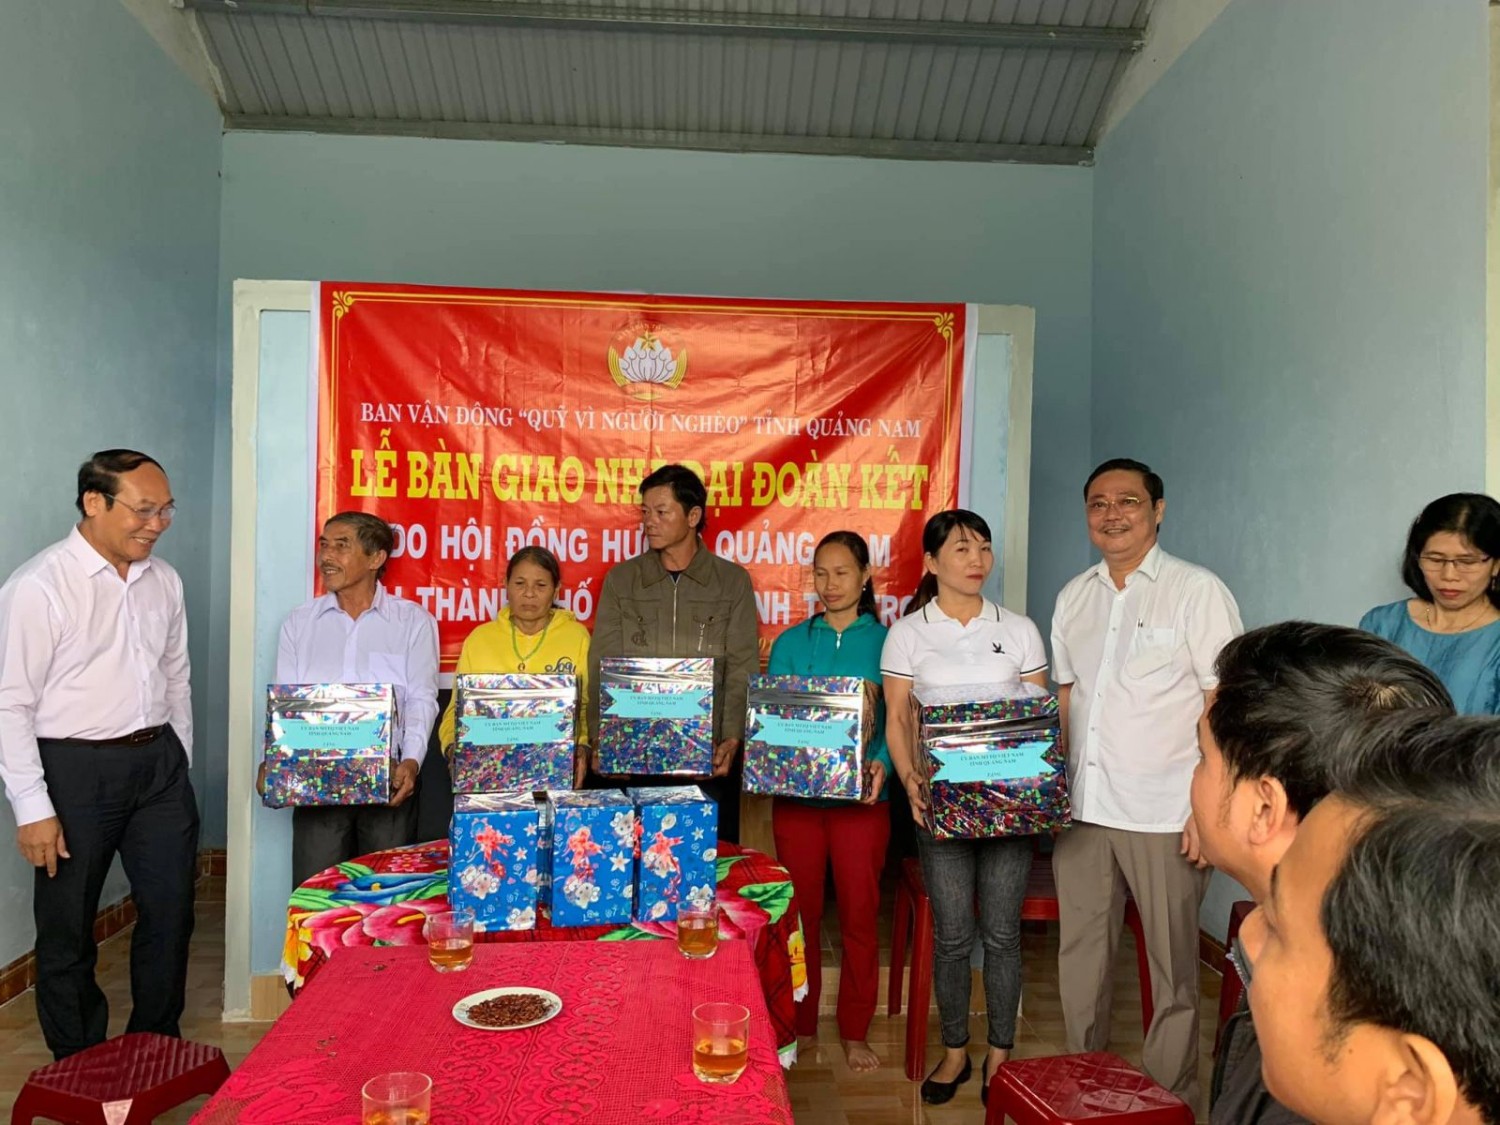 Hội đồng hương Quảng Nam trao tặng 5 nhà Đại đoàn kết cho người nghèo